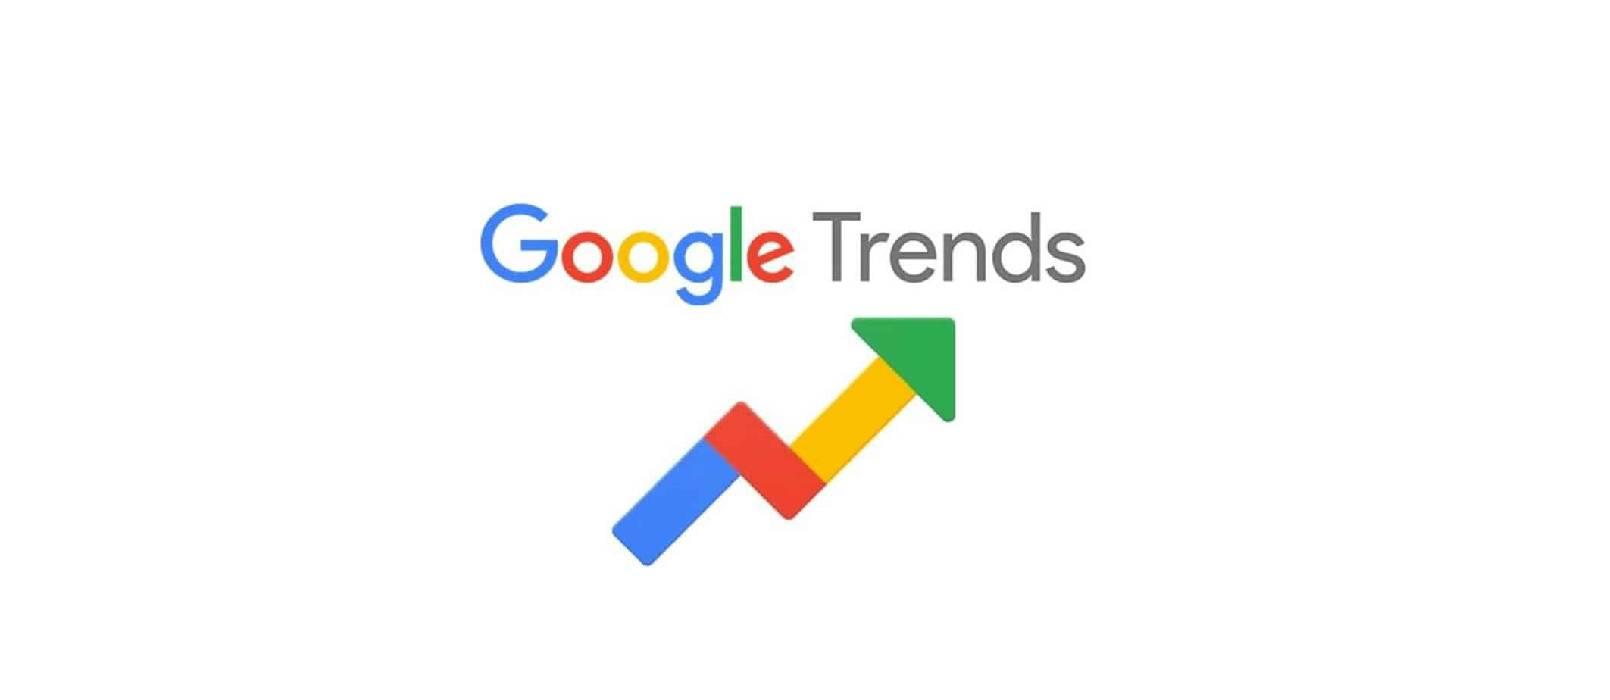 Google Trends - Jak korzystać z najpopularniejszego narzędzia do badania trendów i potrzeb użytkowników?